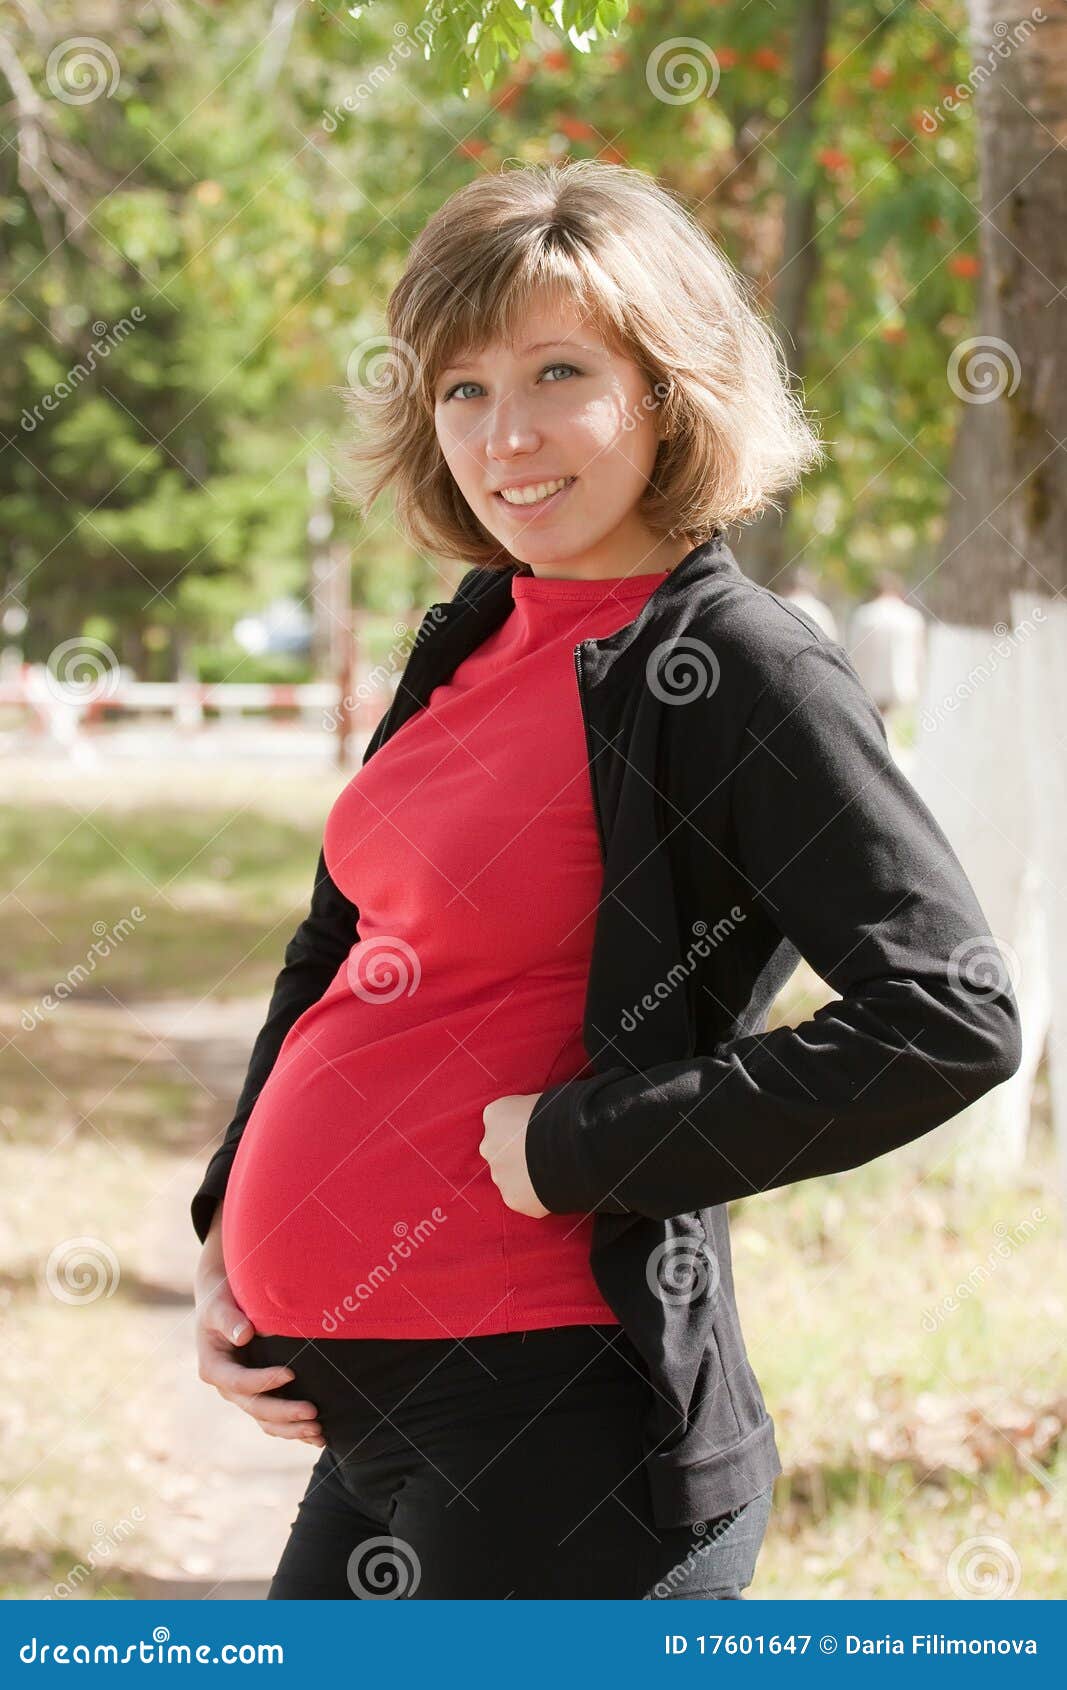 Falls When Pregnant 60